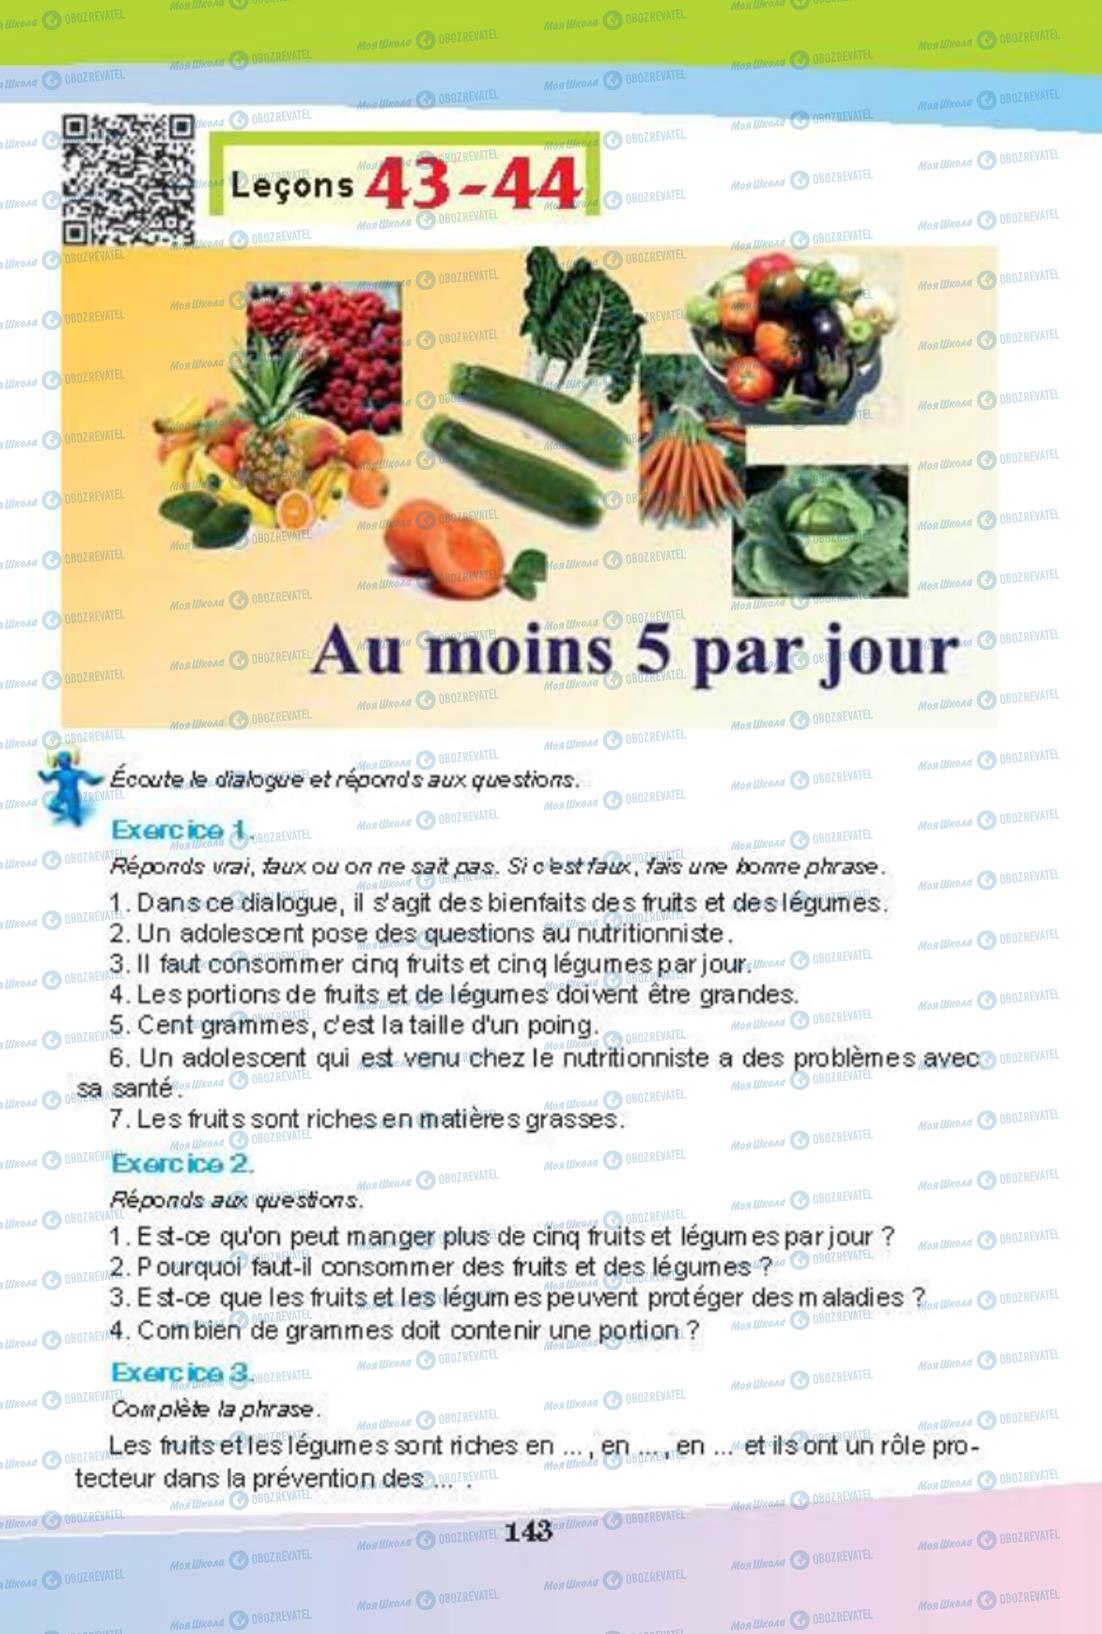 Підручники Французька мова 8 клас сторінка 142